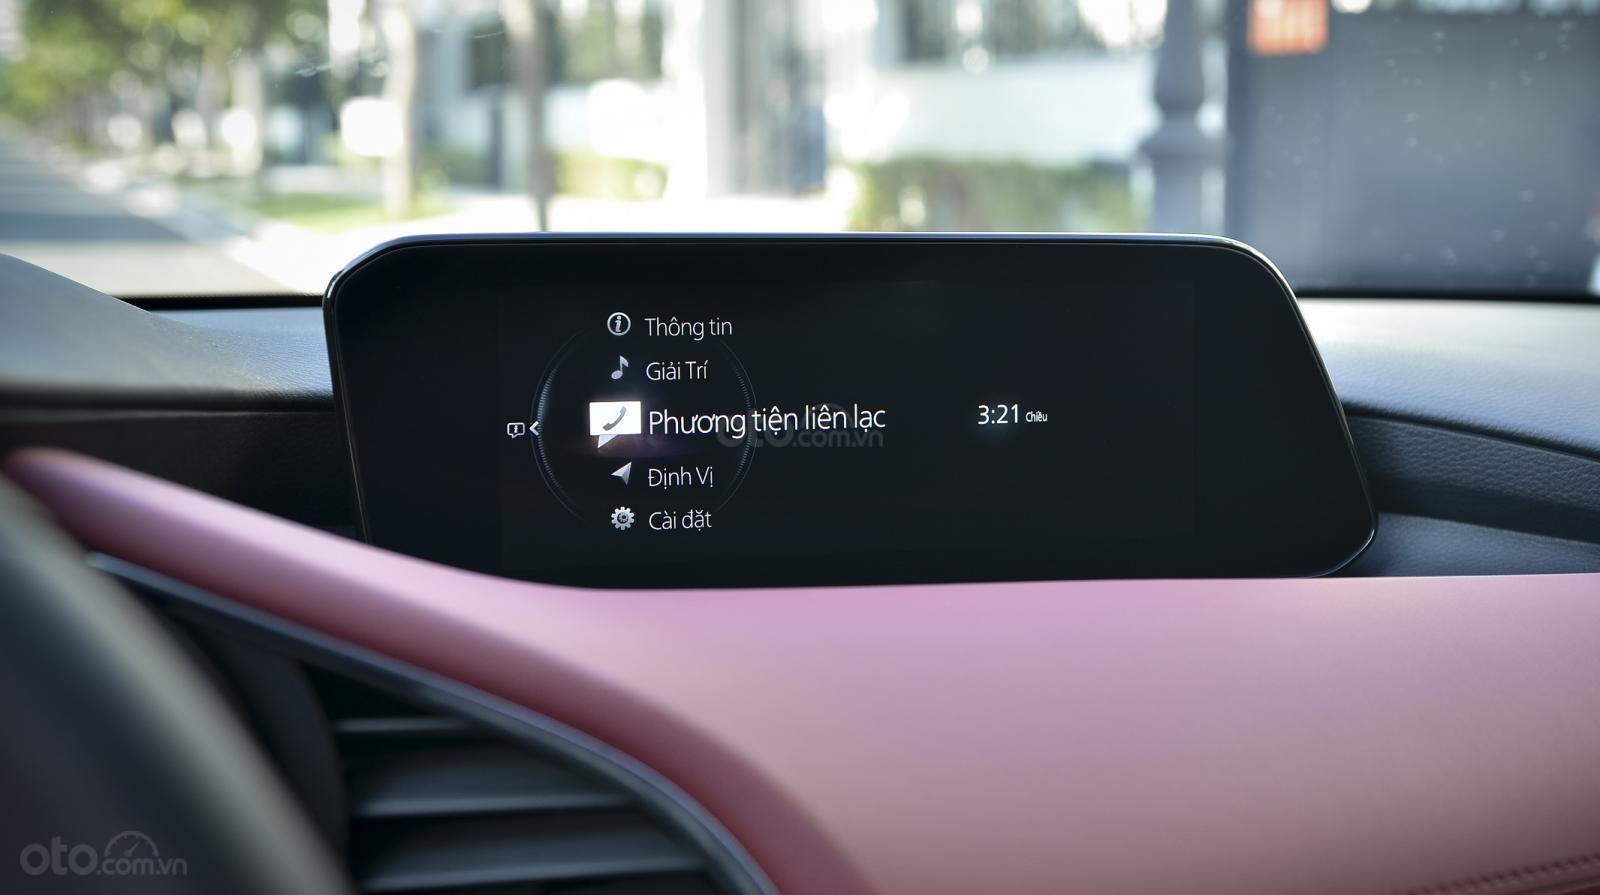 Trang bị nội thất xe Mazda 3 2020 thế hệ mới: Màn hình